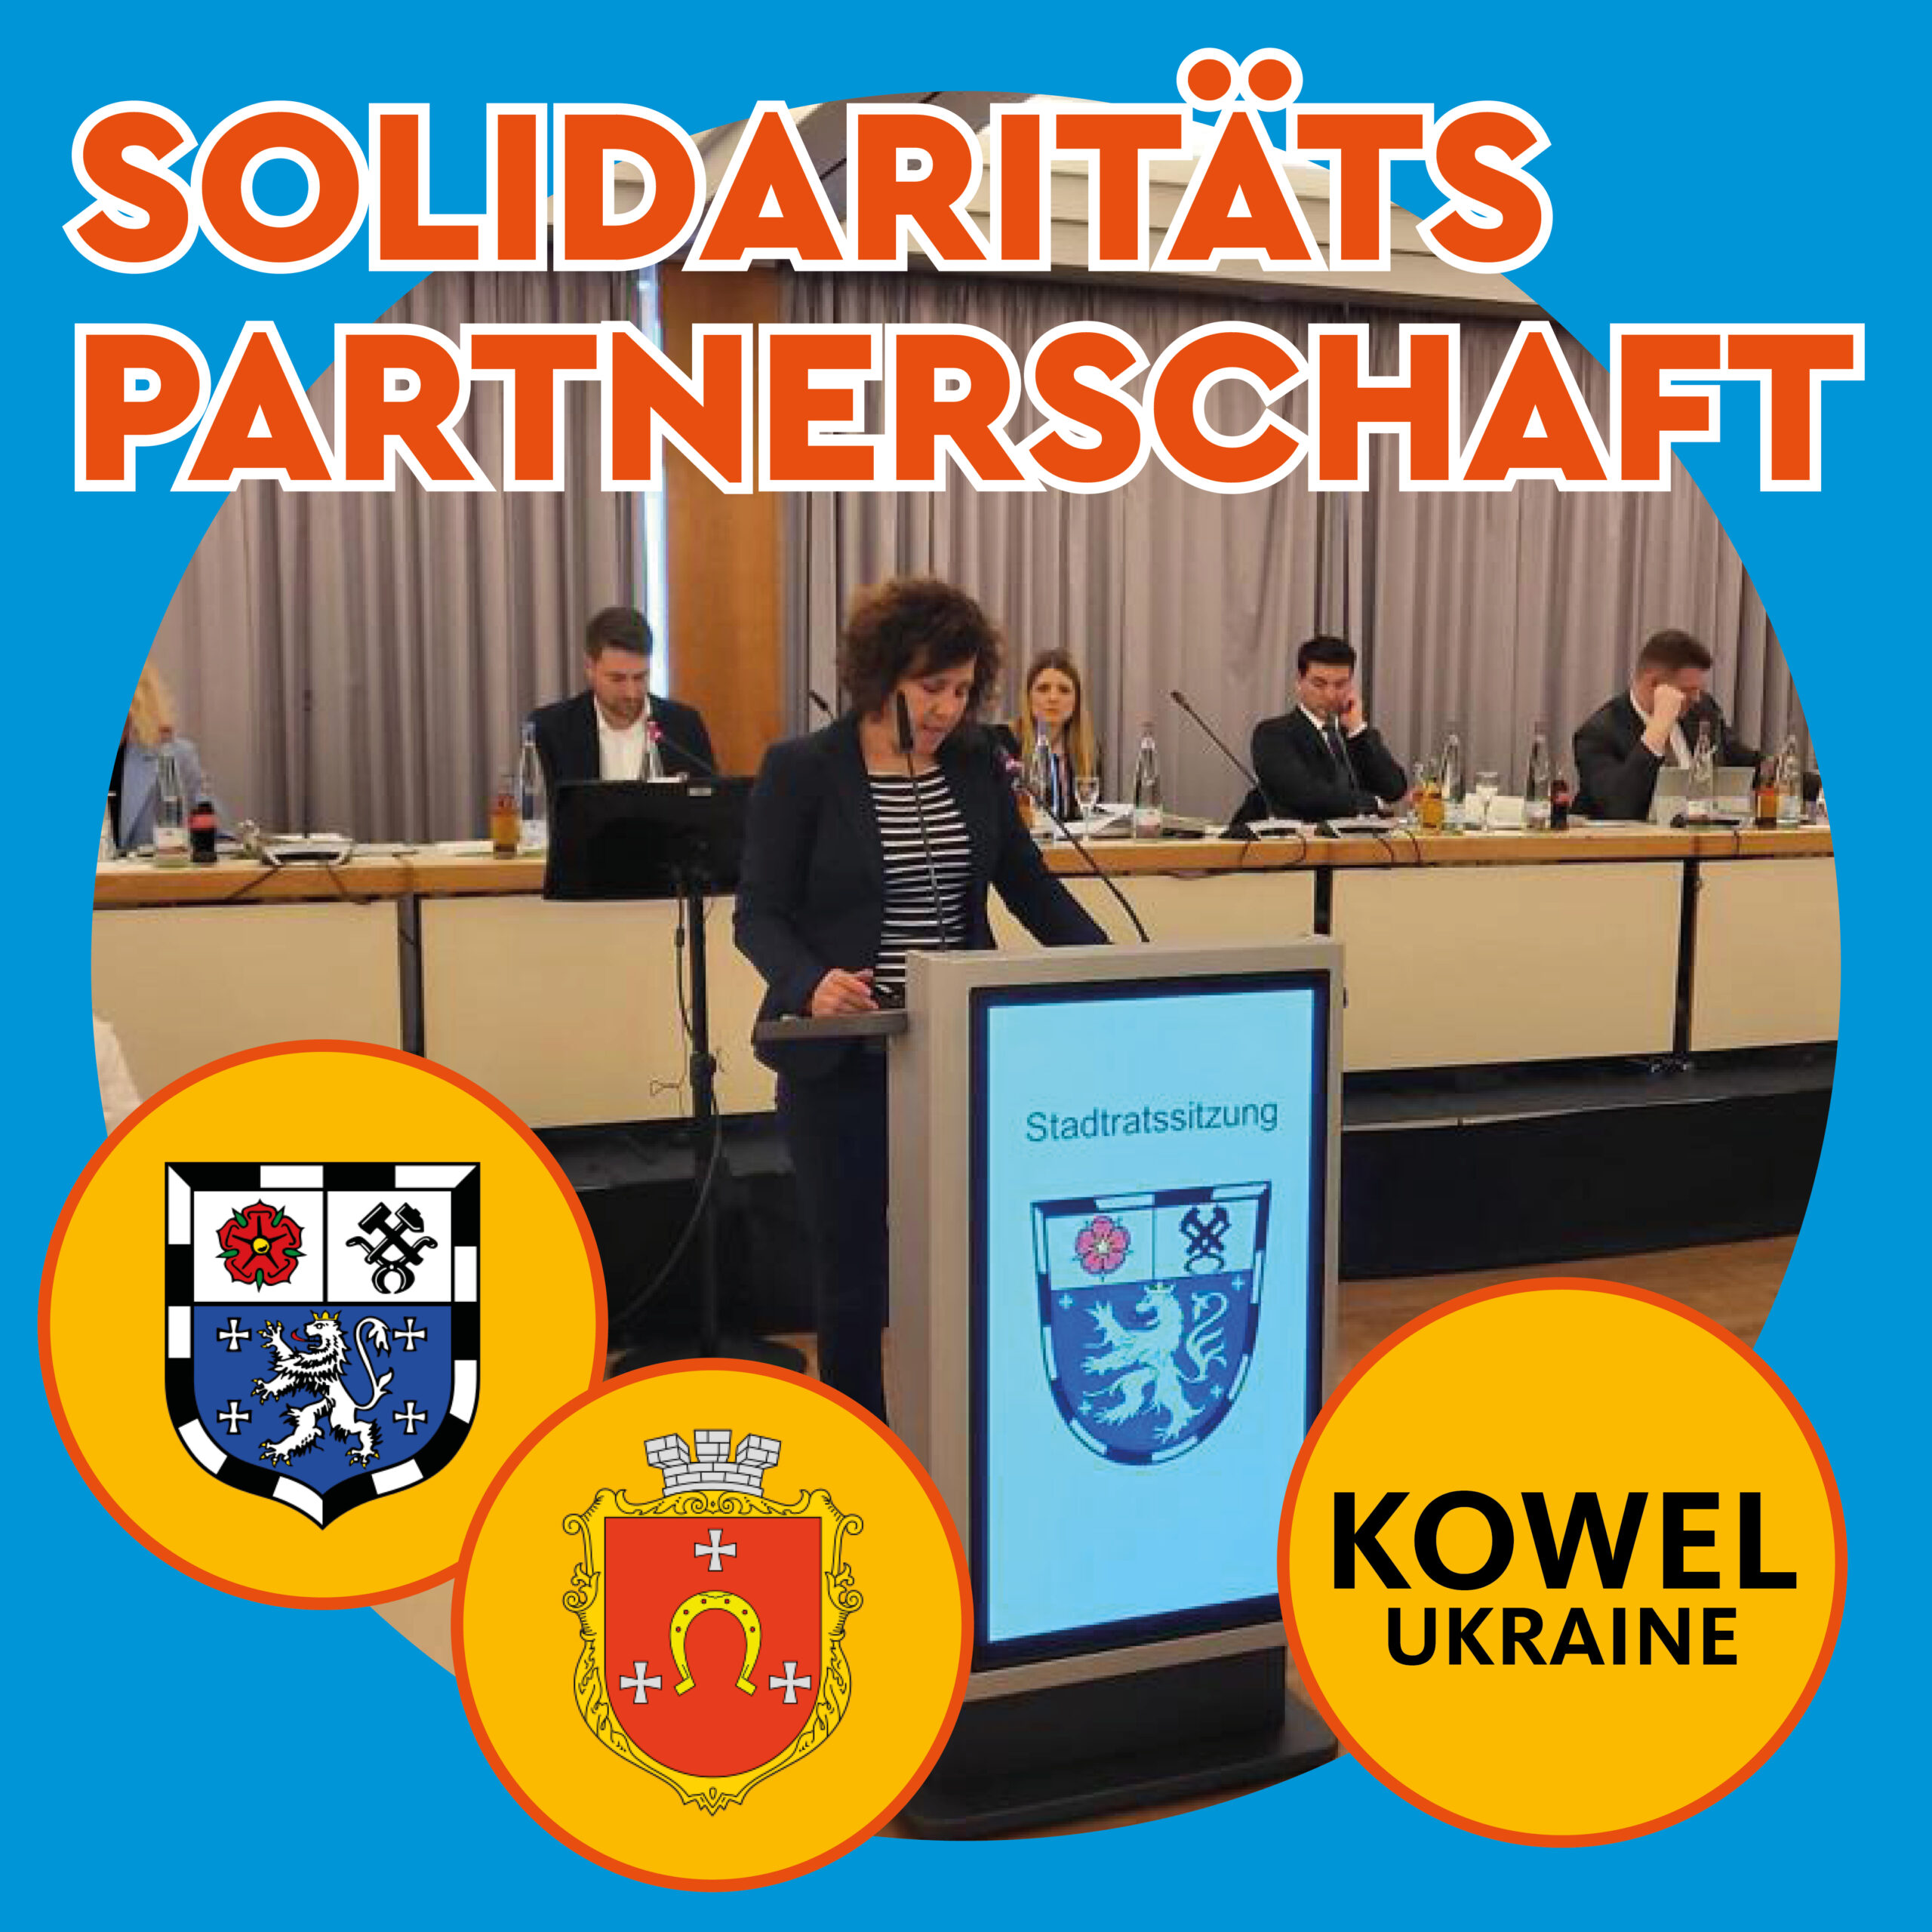 CDU_SOCIAL KACHELN_städtepartnerschaft